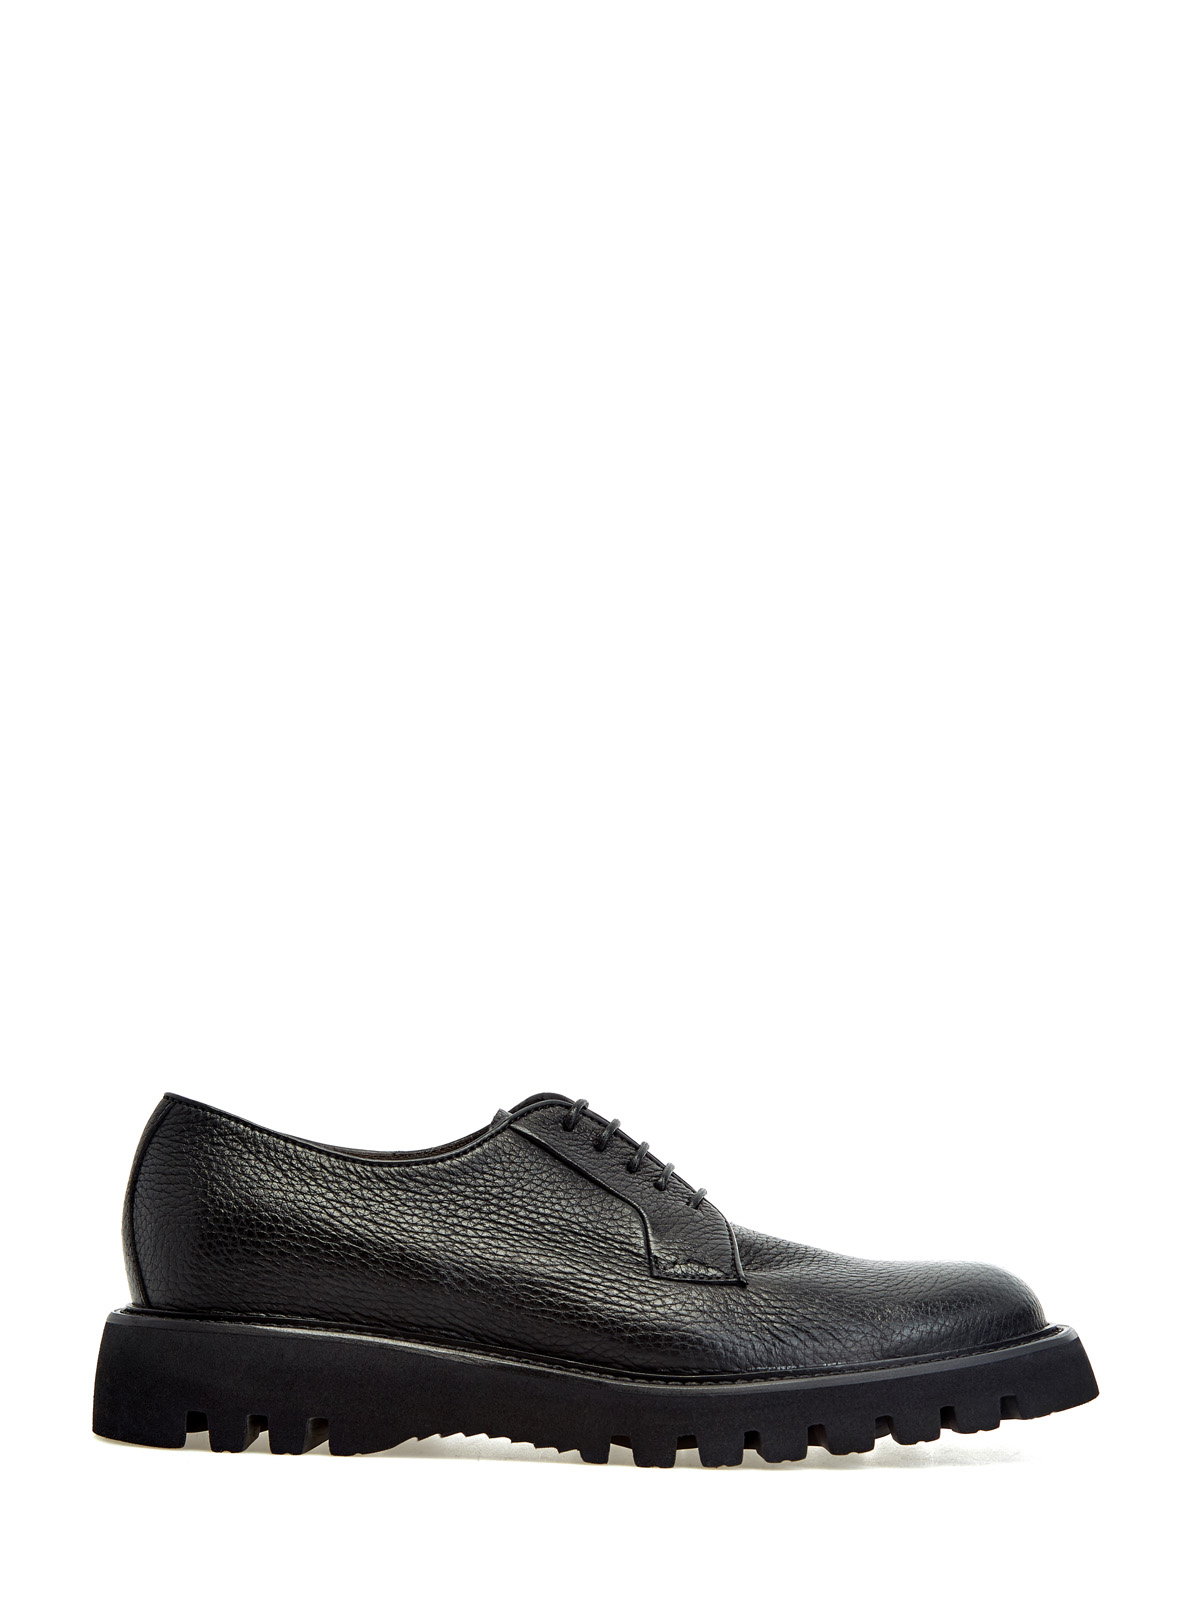 Кожаные ботинки-дерби на массивной подошве BARRETT, цвет черный, размер 40.5;41;41.5;42.5;43;43.5;44;45 - фото 1